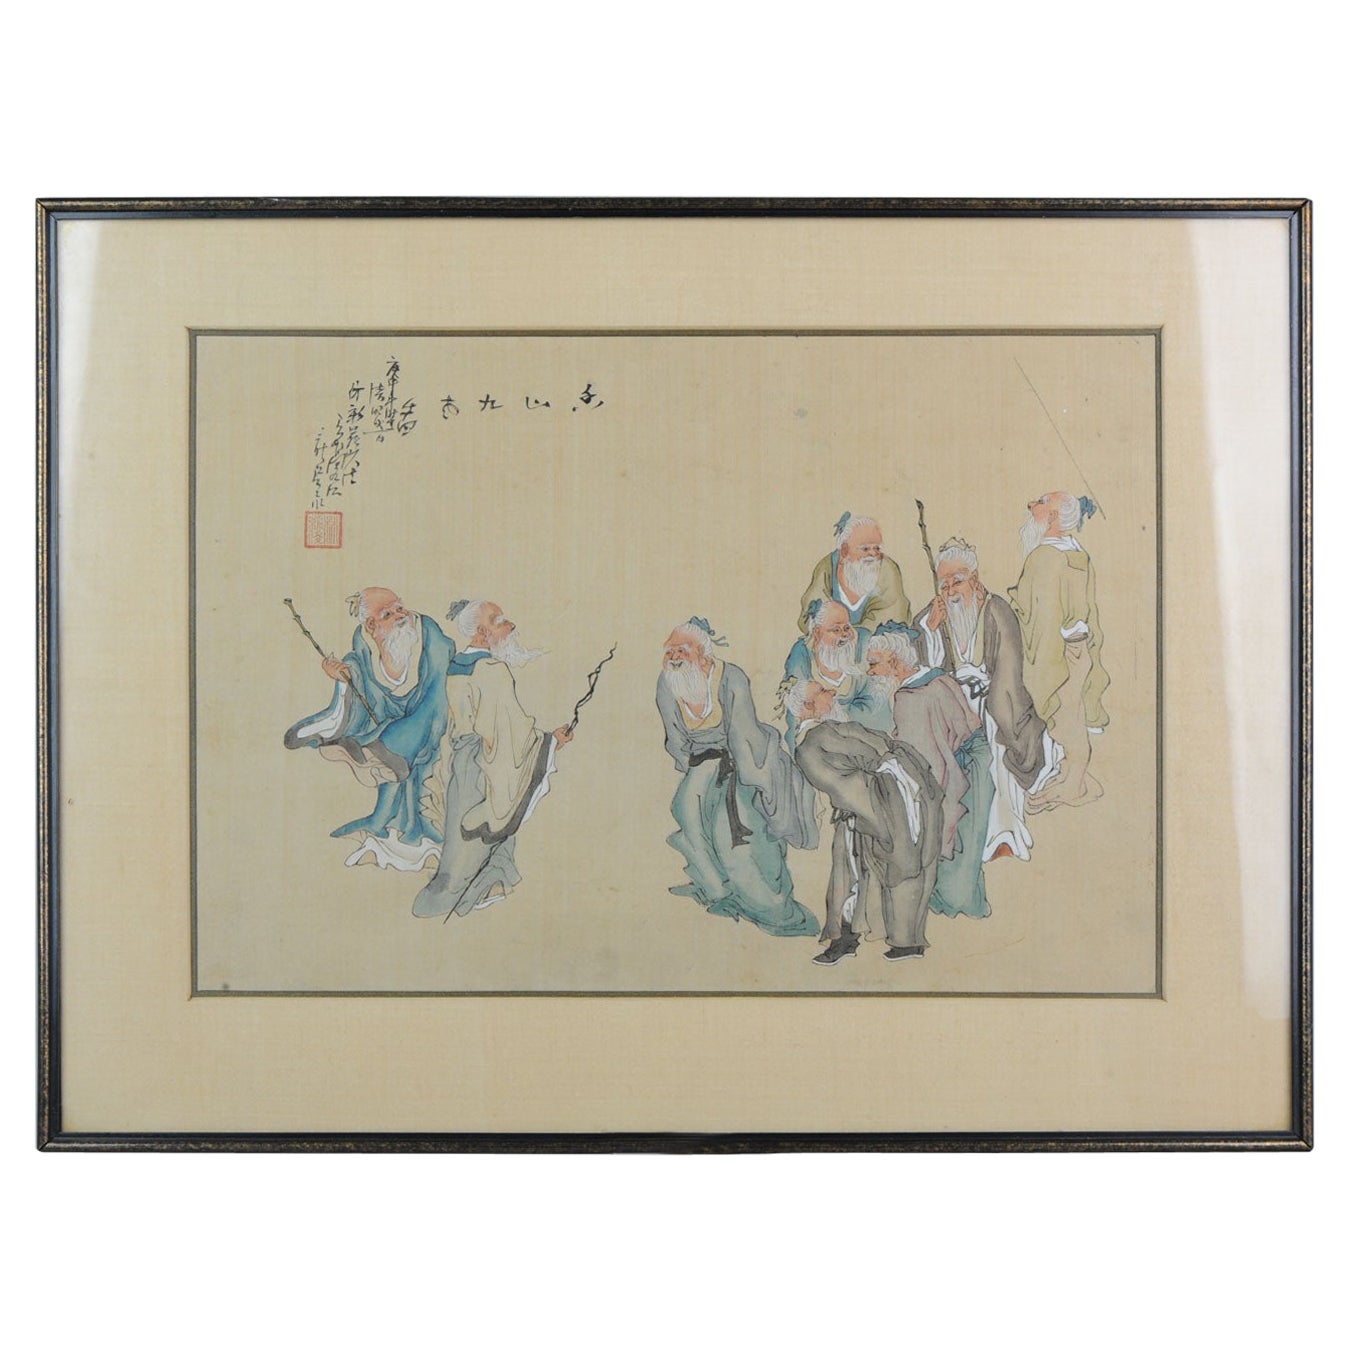 Très belle peinture chinoise et calligraphie ancienne, fin 19e début 20e siècle